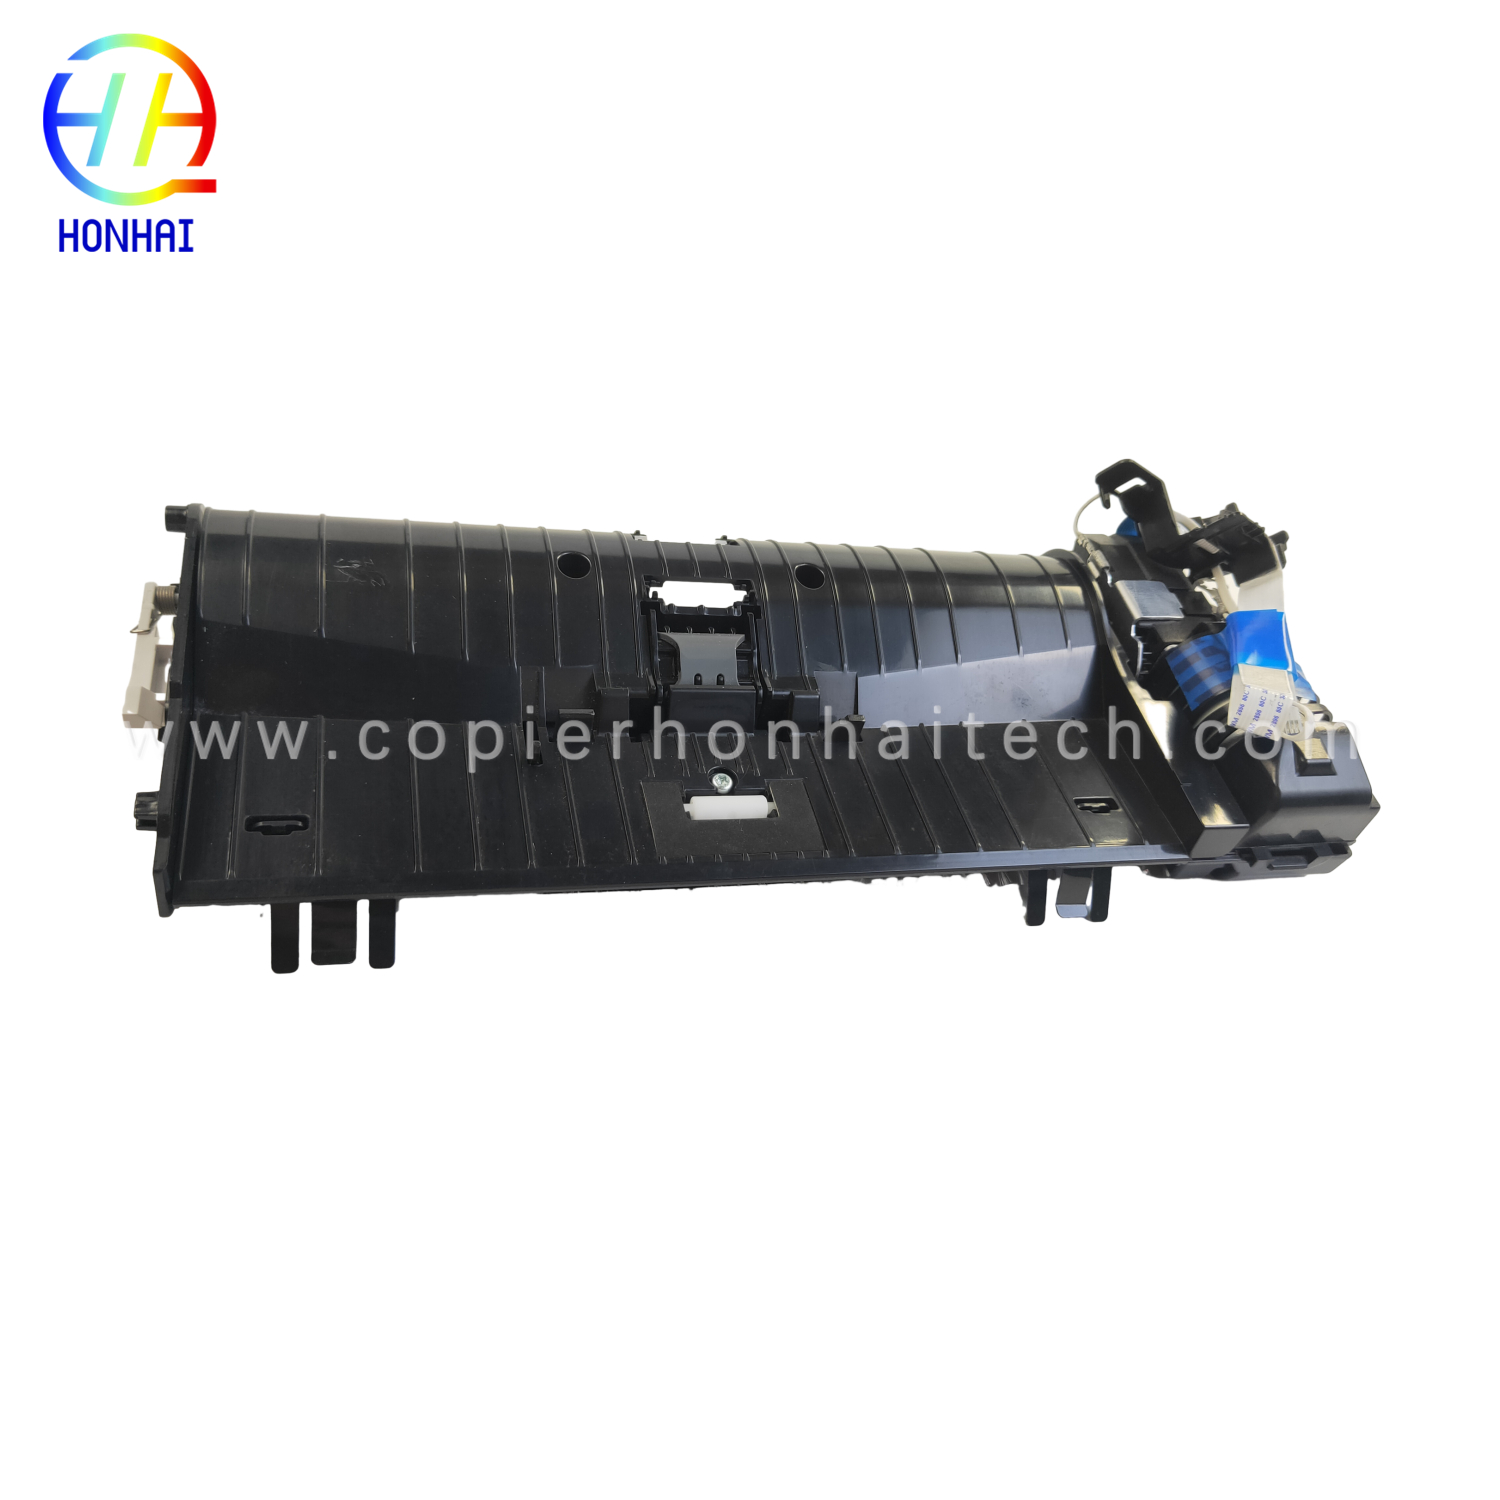 https://www.copierhonhaitech.com/origen-adf-assembly-for-hp-color-laserjet-m277-product/